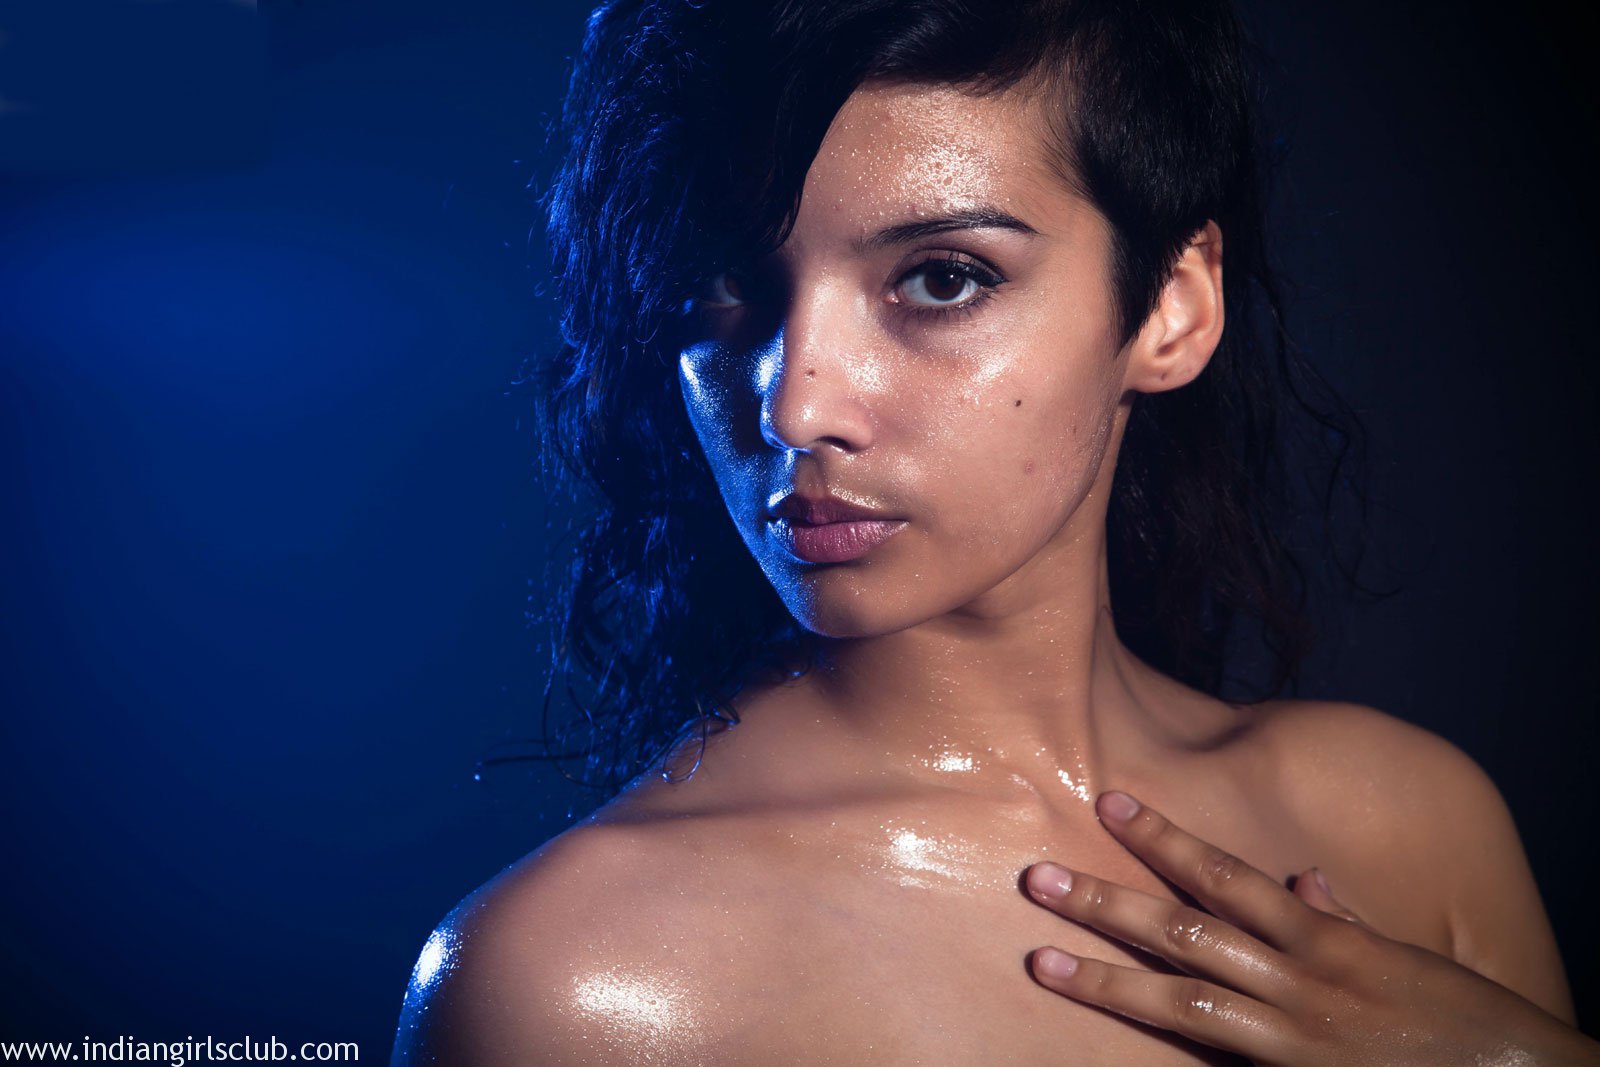 1600px x 1067px - Indian XXX Photos Nude Indian Girl Shanaya Oily Boobs ...